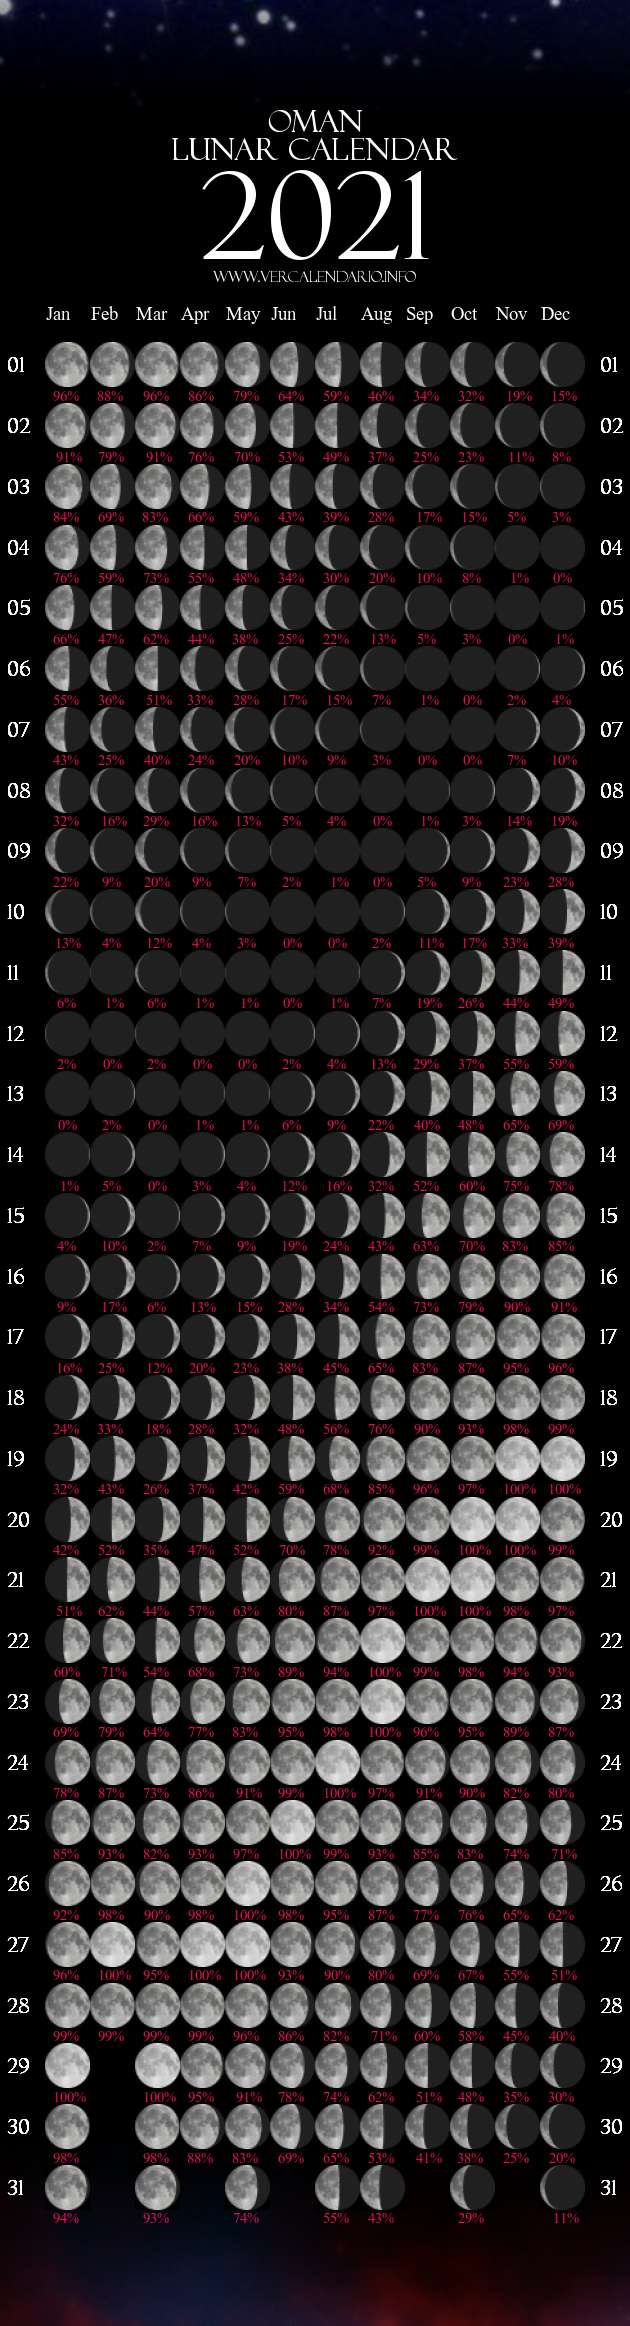 Lunar Calendar 2021 (Oman)